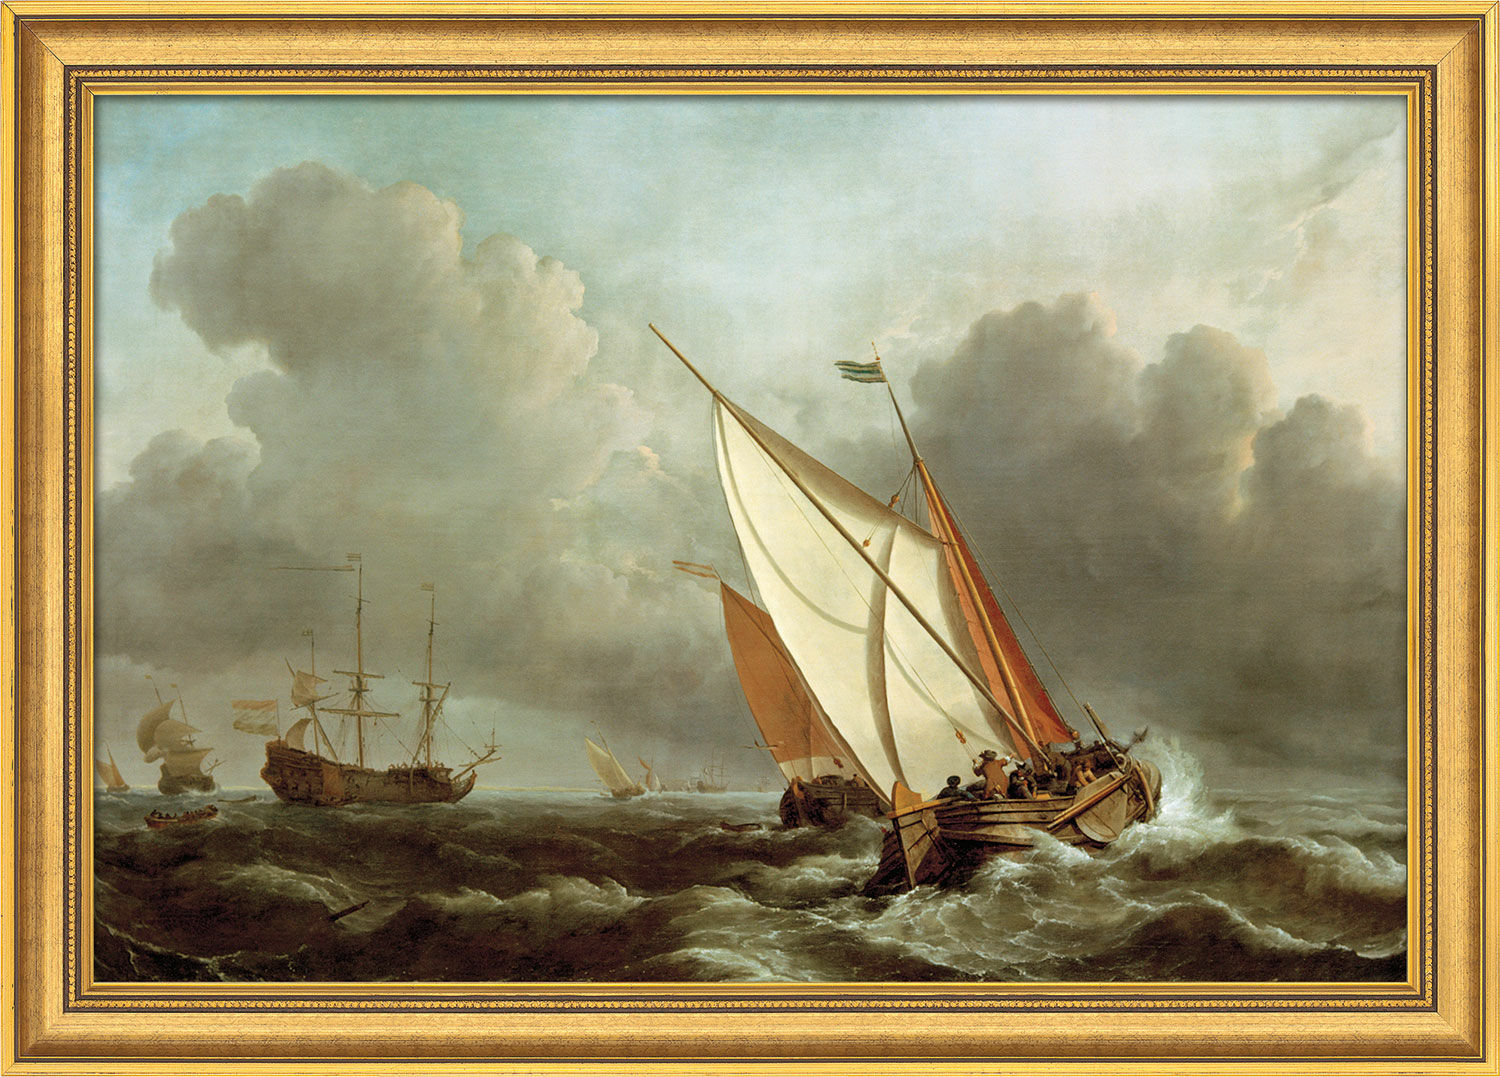 Bild "Schiff in stürmischer See" (1671), gerahmt von Willem van de Velde